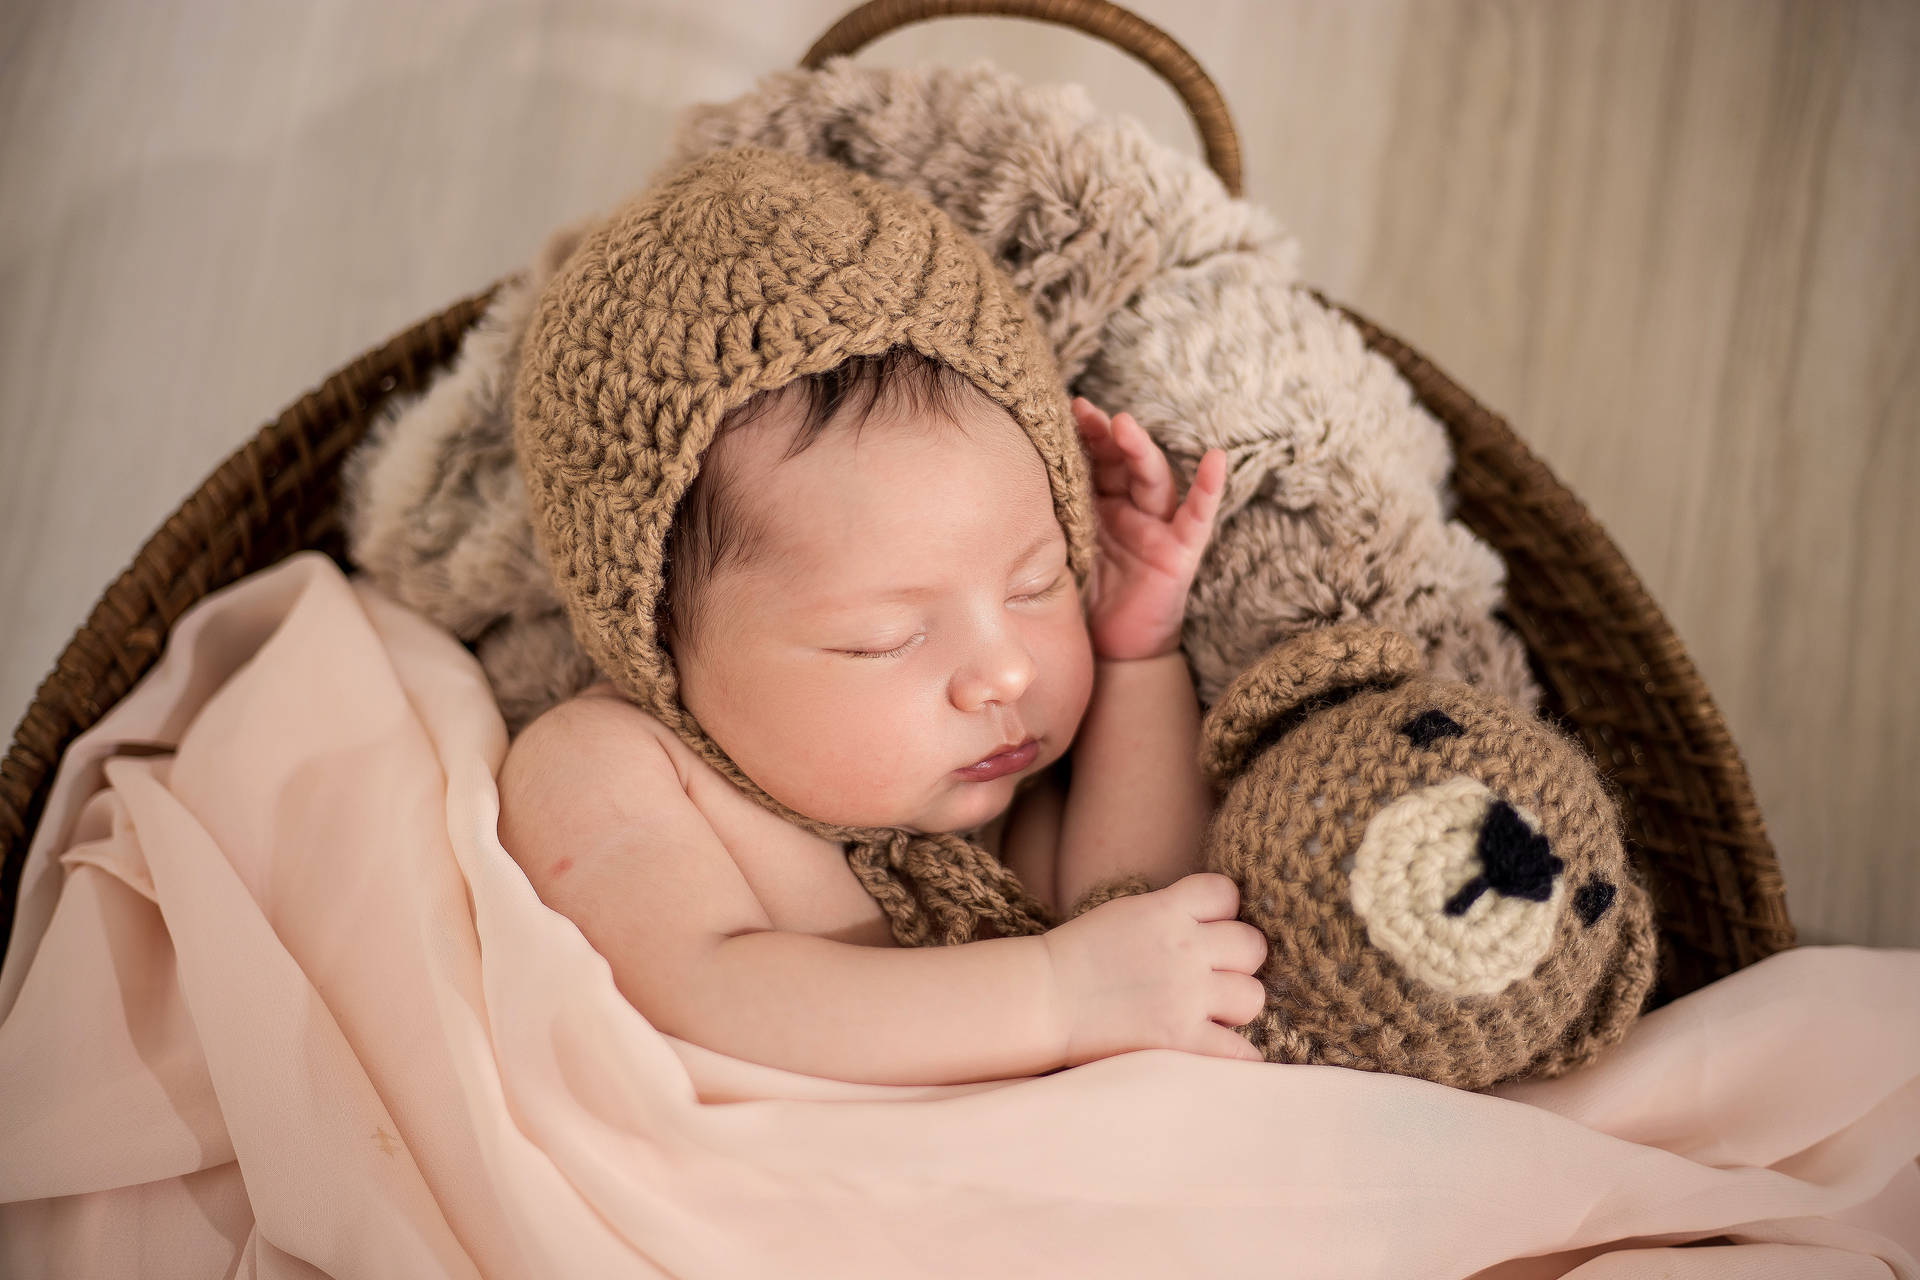 Very Cute Baby Wearing A Bonnet Wallpaper